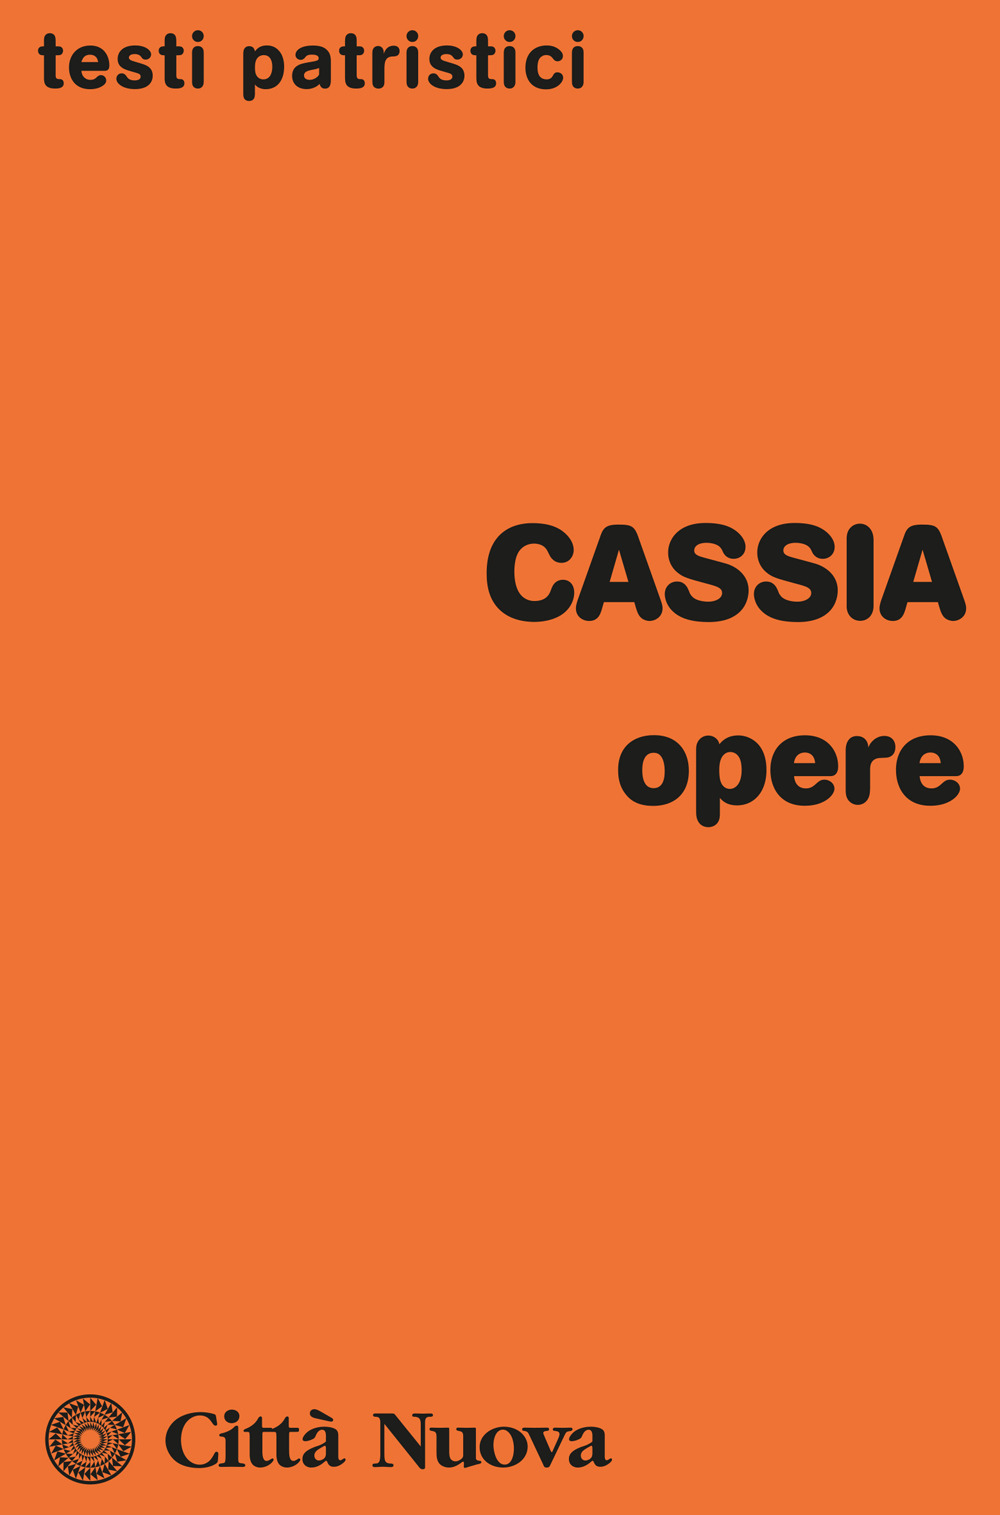 Libri Cassia - Opere NUOVO SIGILLATO, EDIZIONE DEL 05/08/2022 SUBITO DISPONIBILE